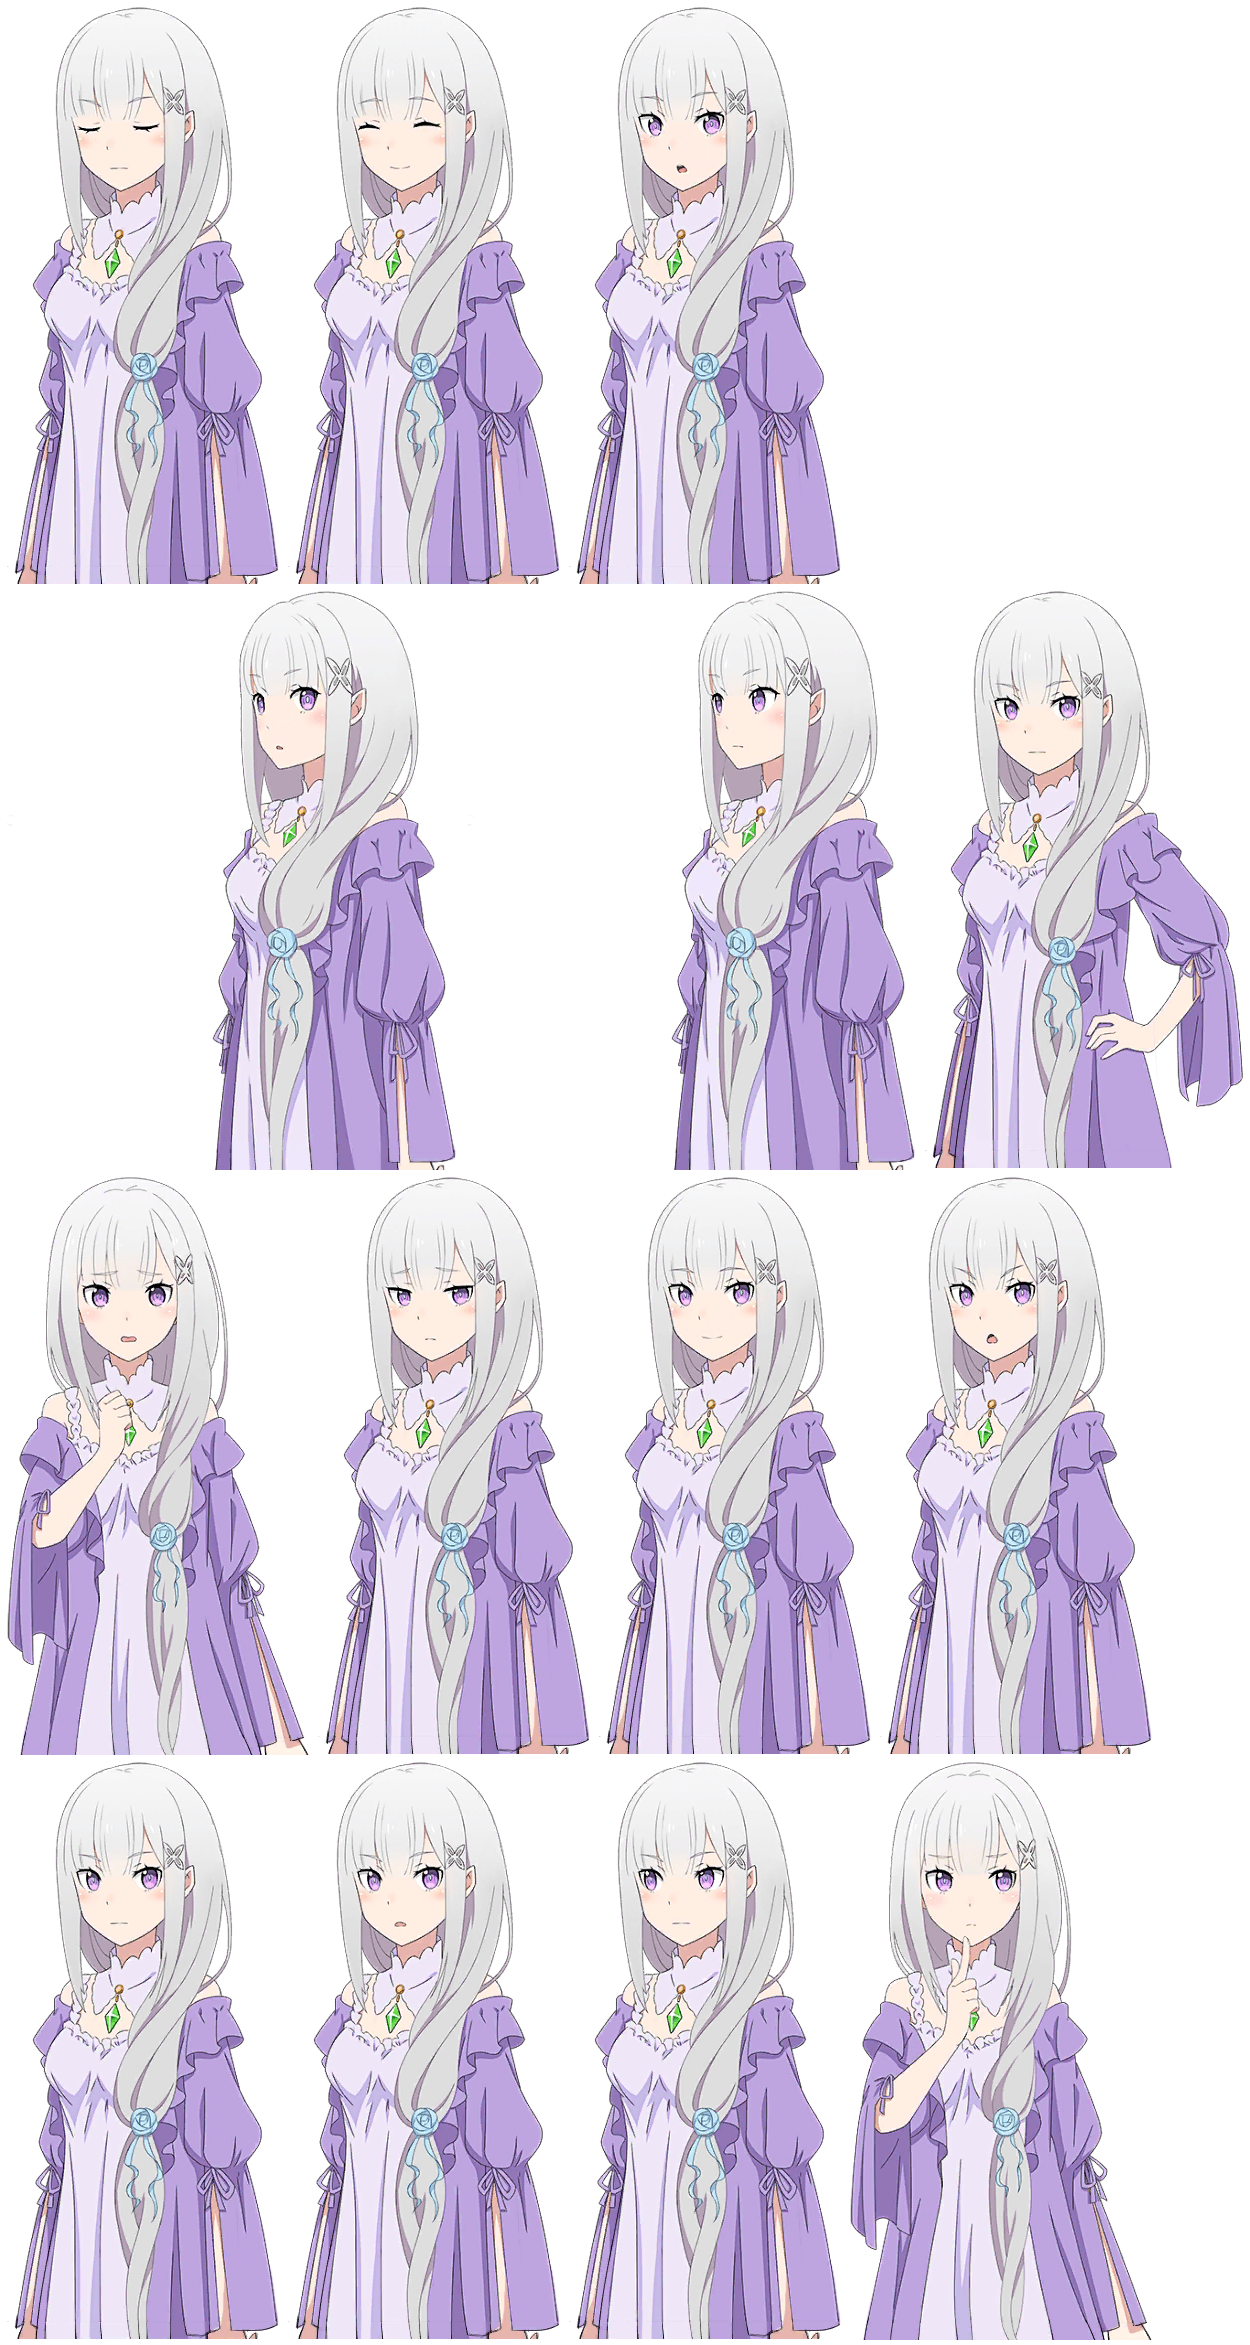 Re: Zero INFINITY - Emilia (Alternate Outfit 2)